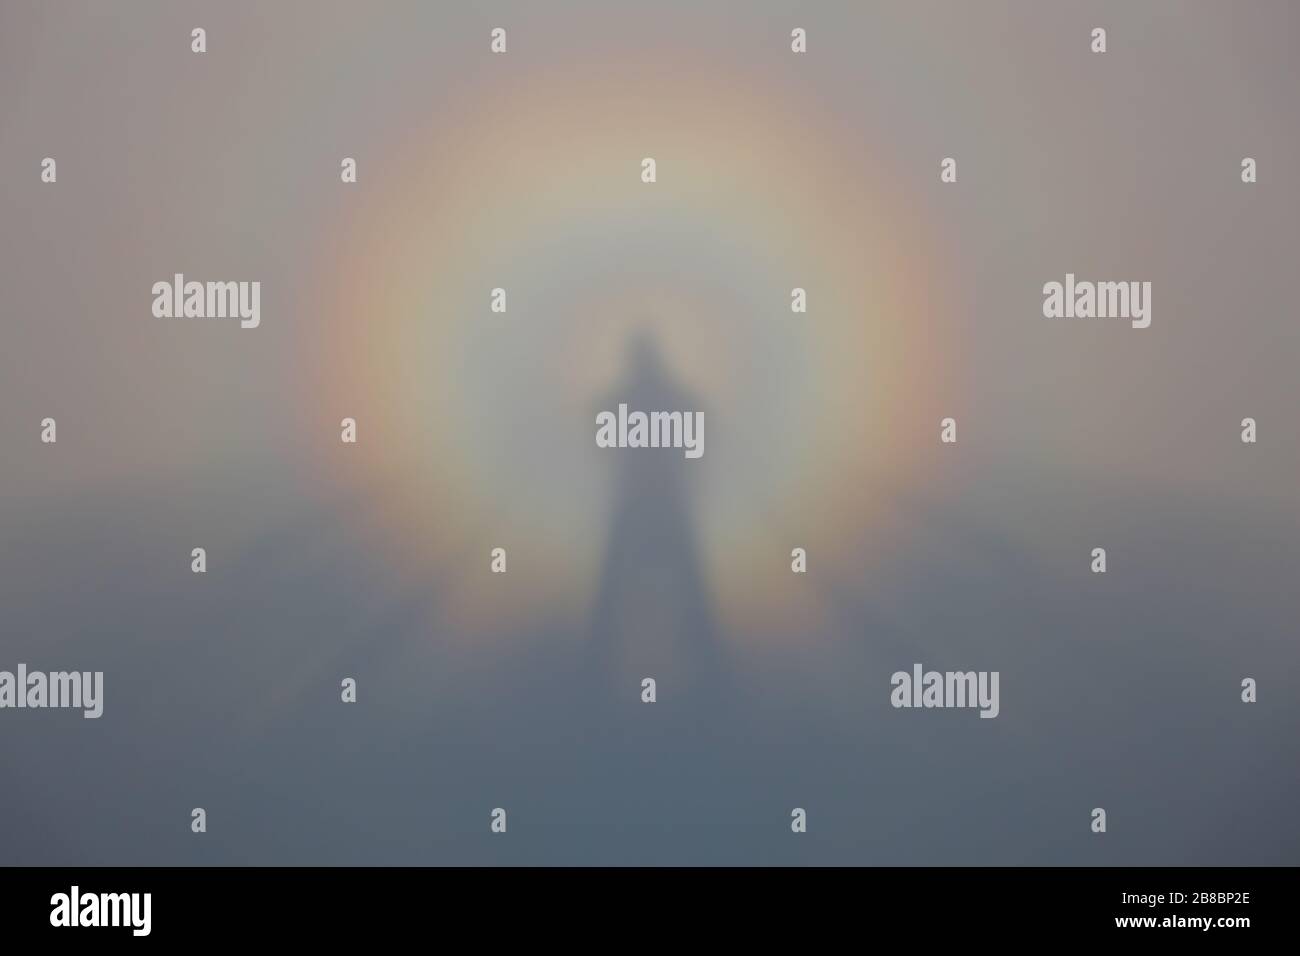 La silhouette avvolta dall'arcobaleno di un corpo umano si riflette nella nebbia Foto Stock